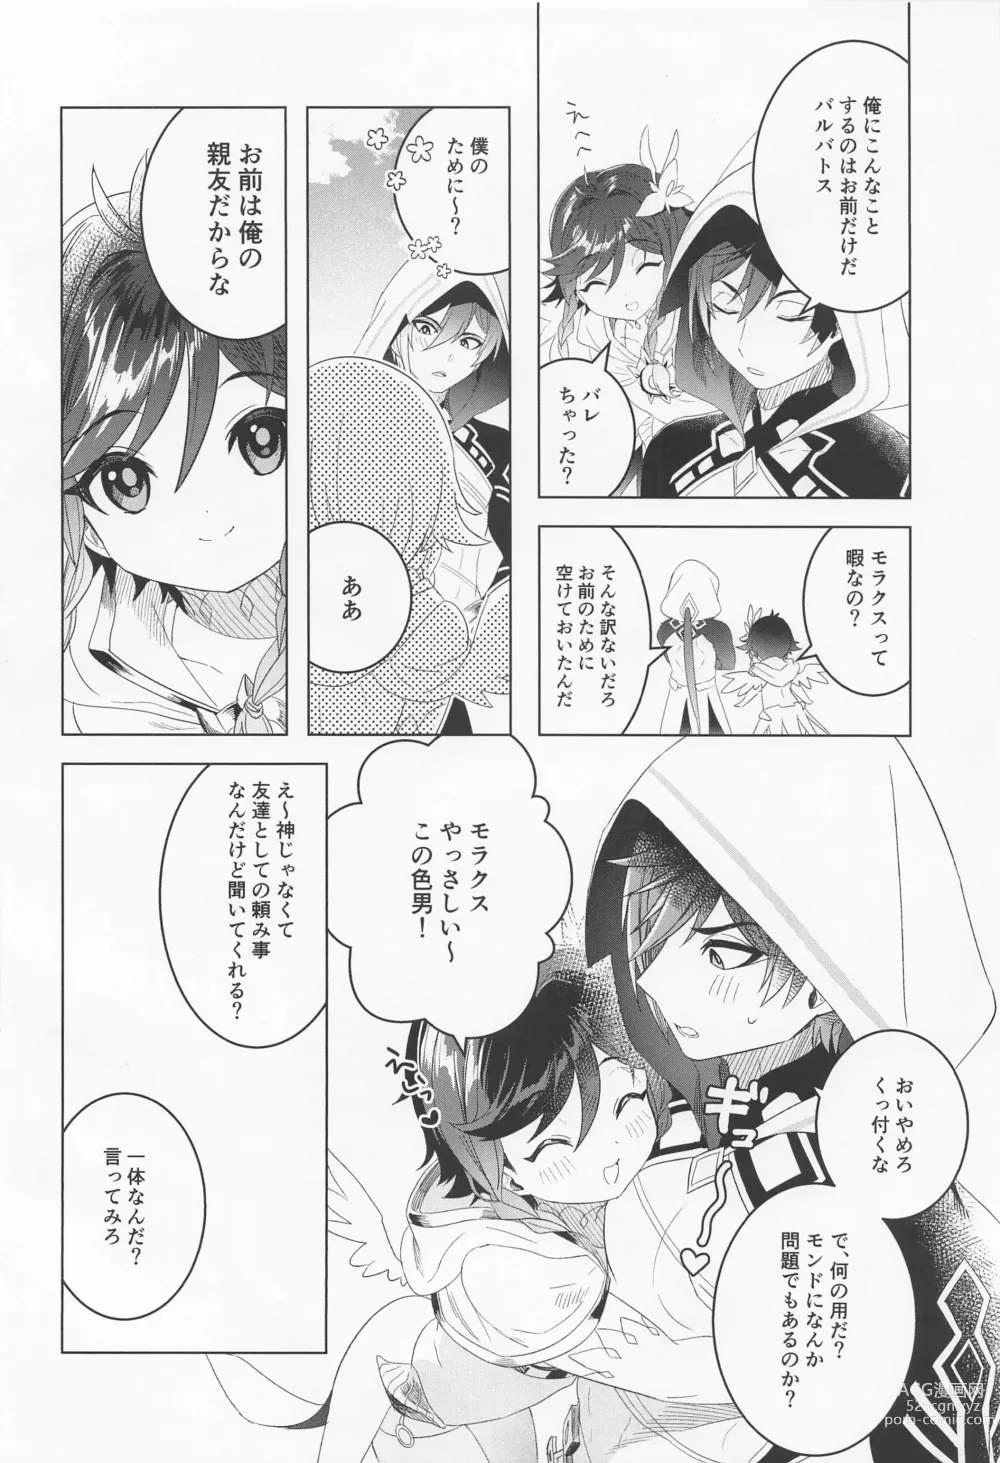 Page 3 of doujinshi Tomodachi Sotsugyou